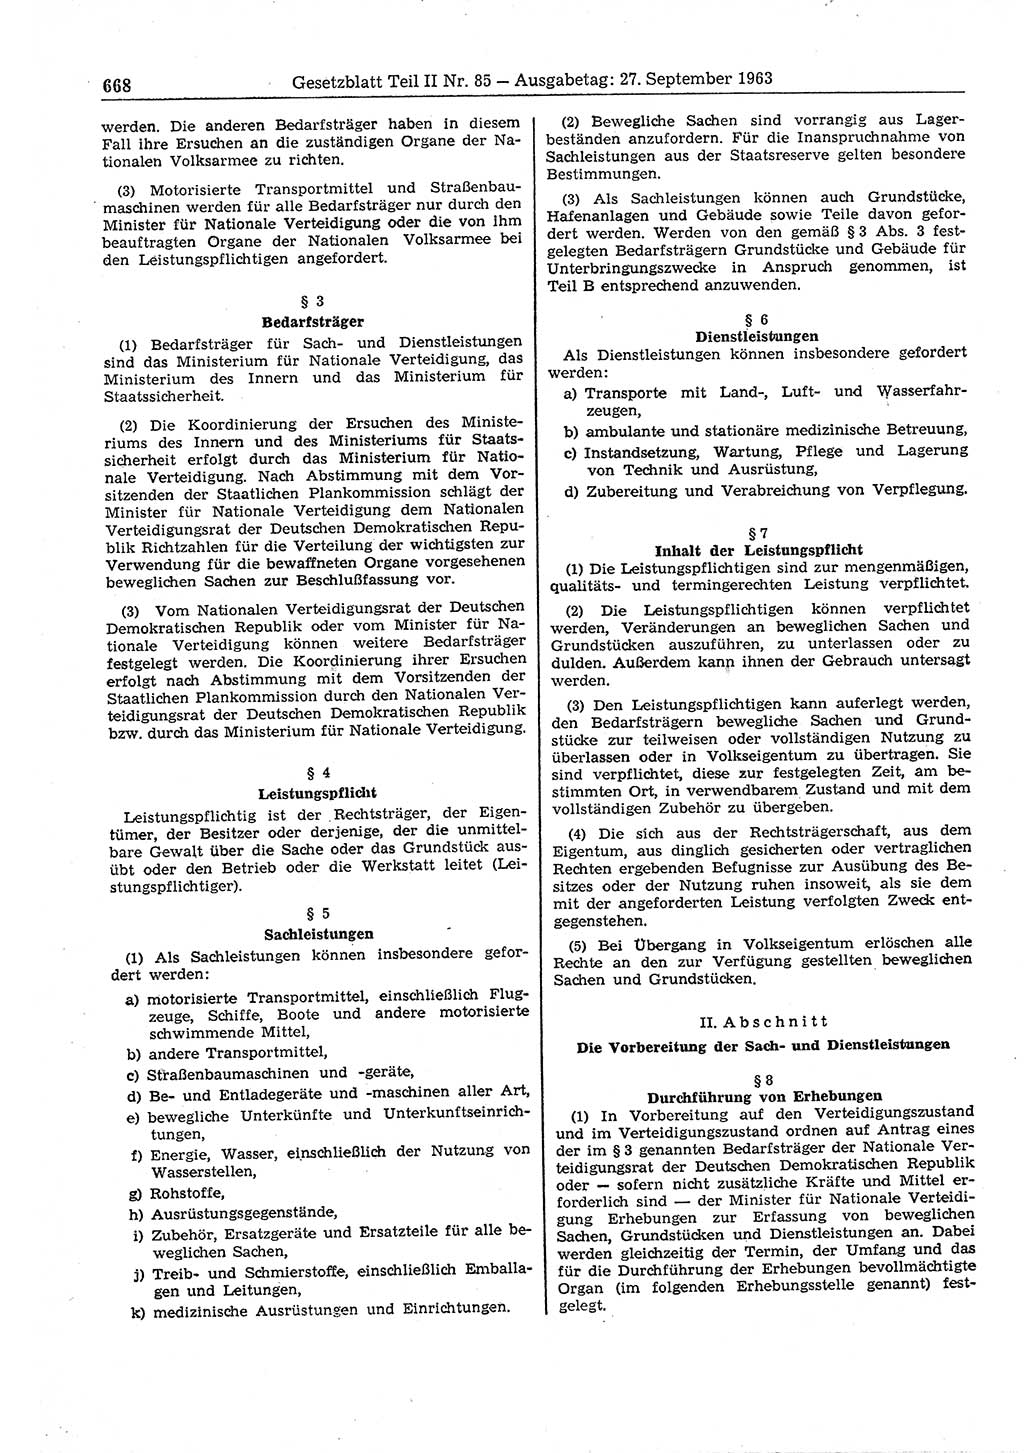 Gesetzblatt (GBl.) der Deutschen Demokratischen Republik (DDR) Teil ⅠⅠ 1963, Seite 668 (GBl. DDR ⅠⅠ 1963, S. 668)